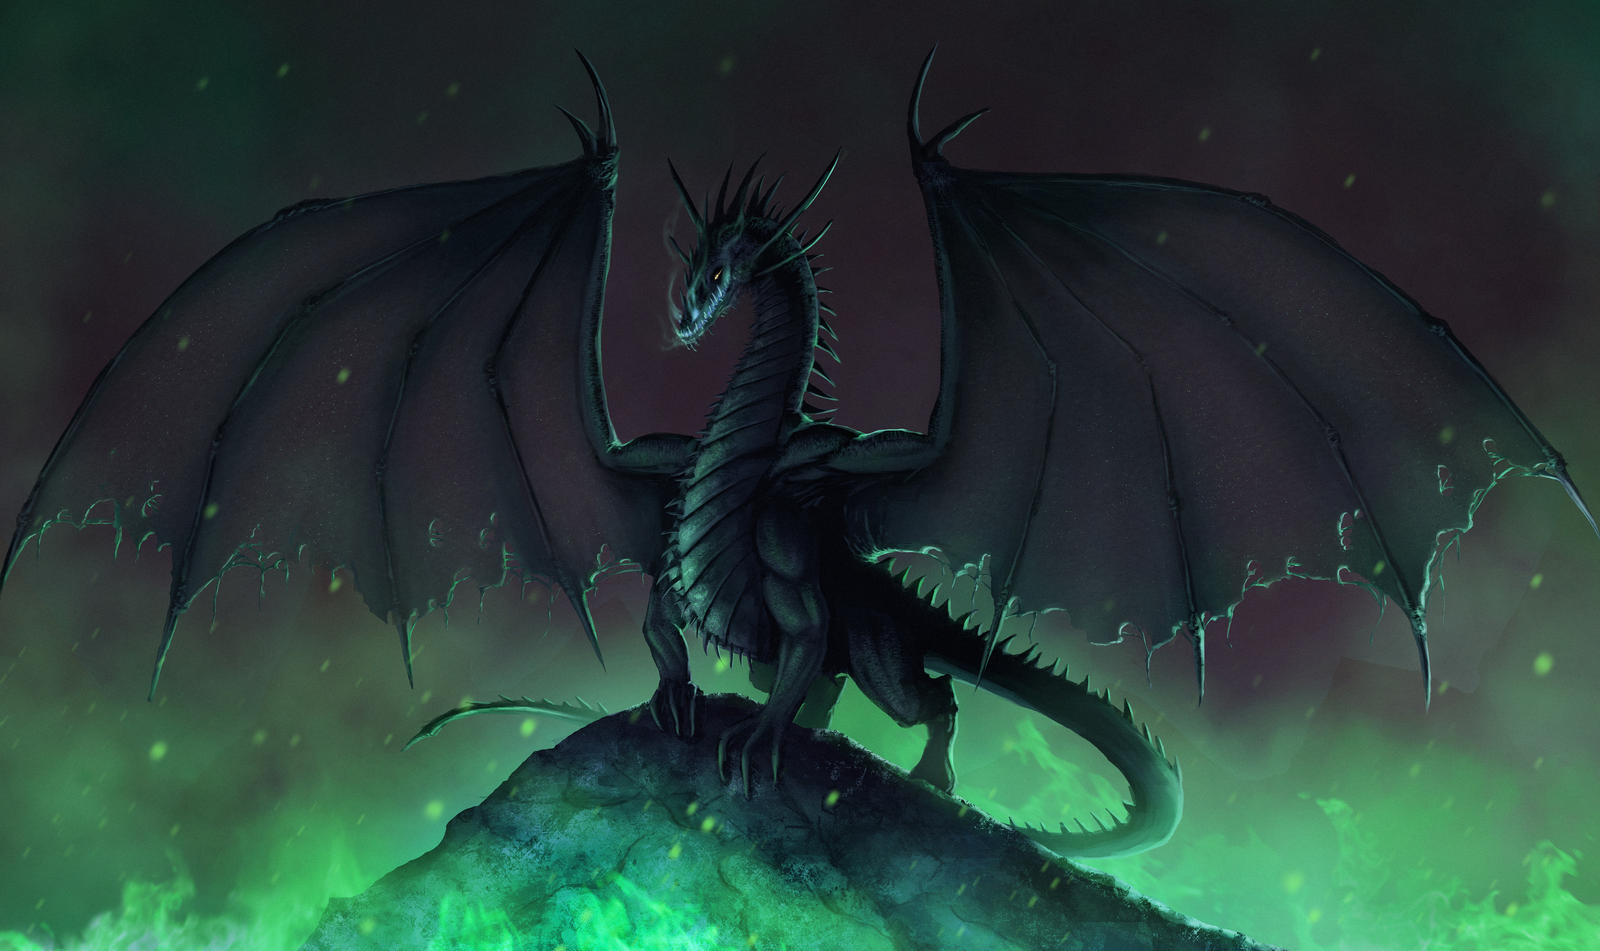 evil_dragon_by_emmanuelmadailart-d85bhlf